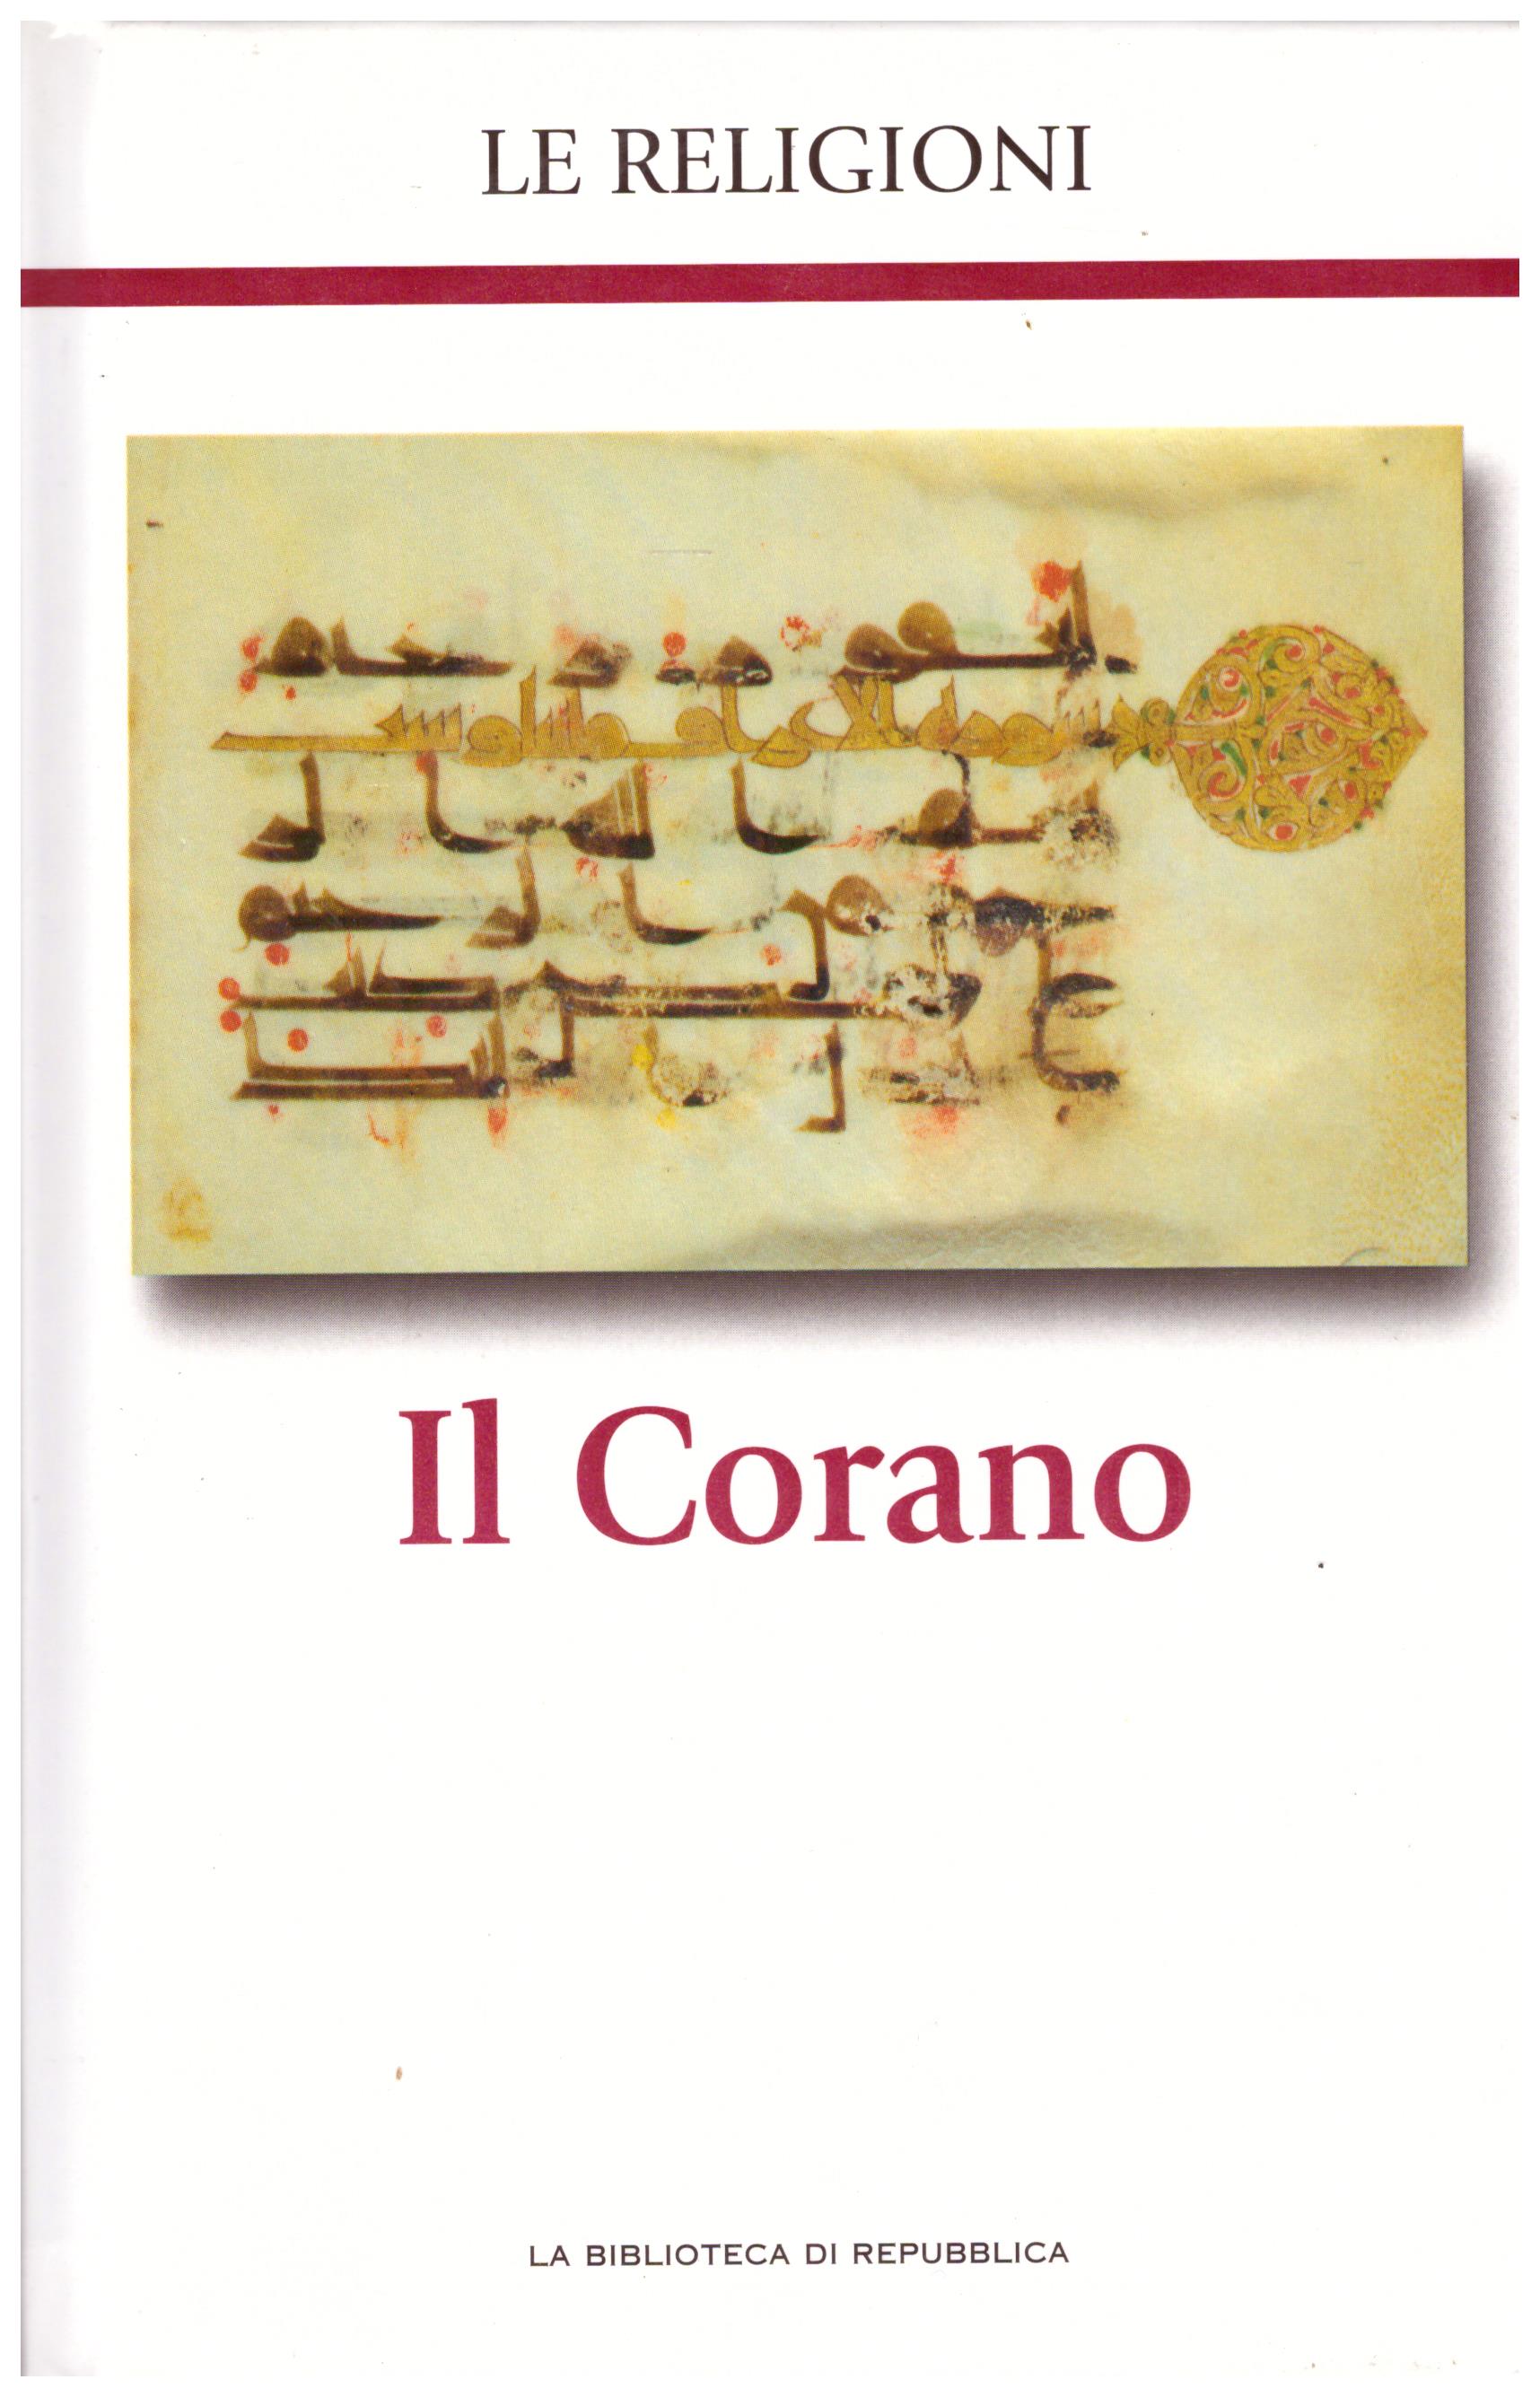 Titolo: Le religioni, Il Corano N.12      Autore: AA.VV, la biblioteca di Repubblica     Editore: Piemme